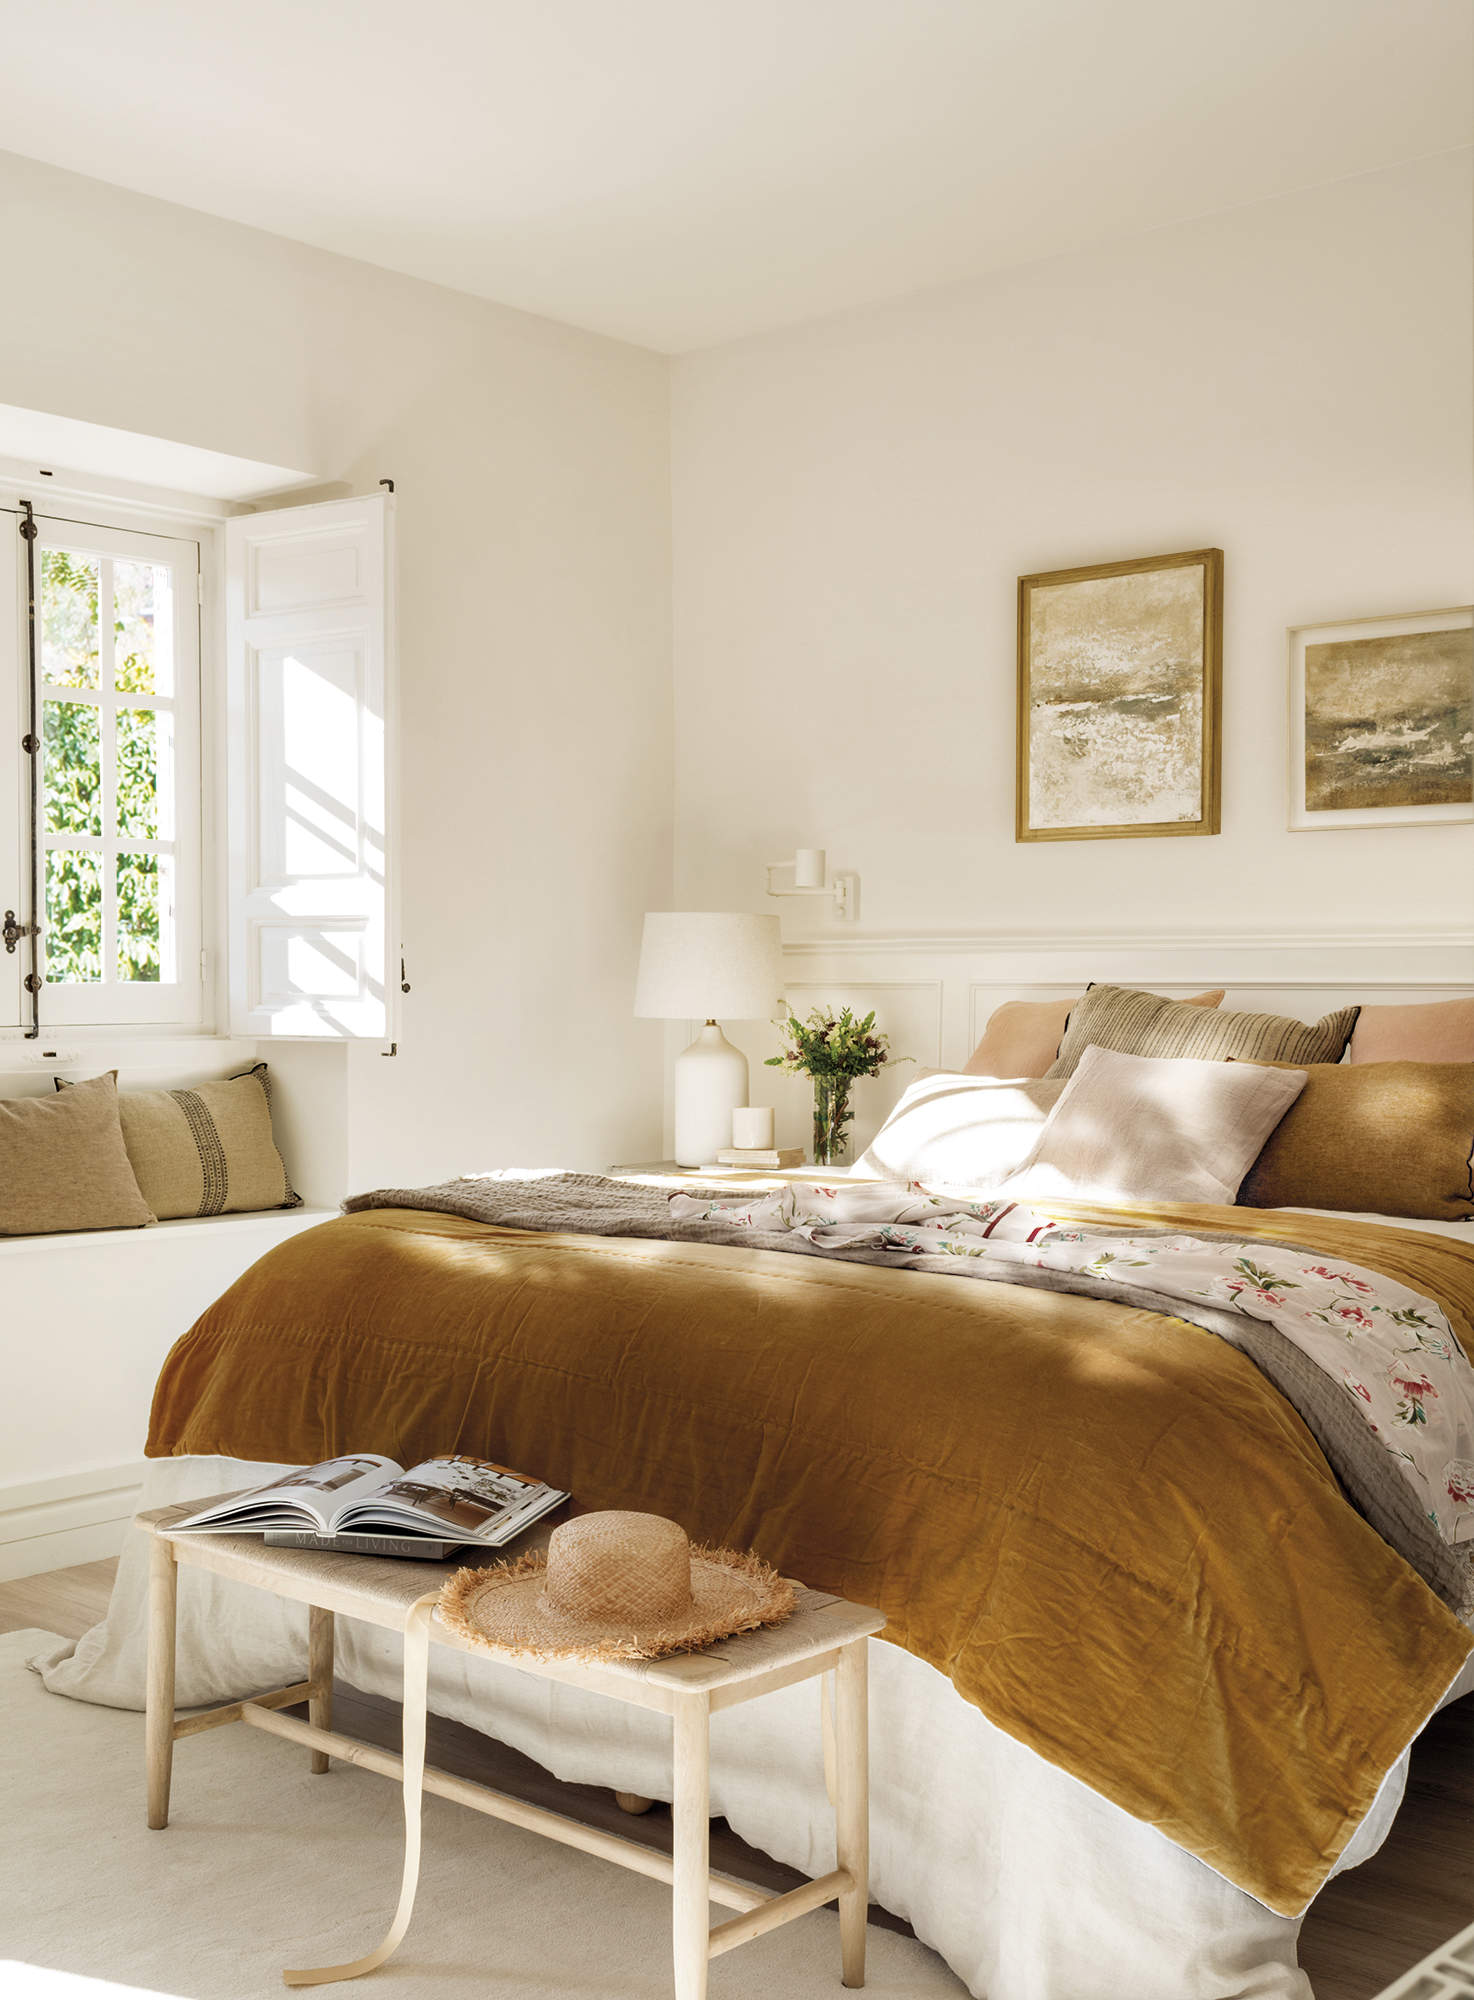 dormitorio con ropa de cama color mostaza, banco bajo ventana, banqueta de madera y fibra